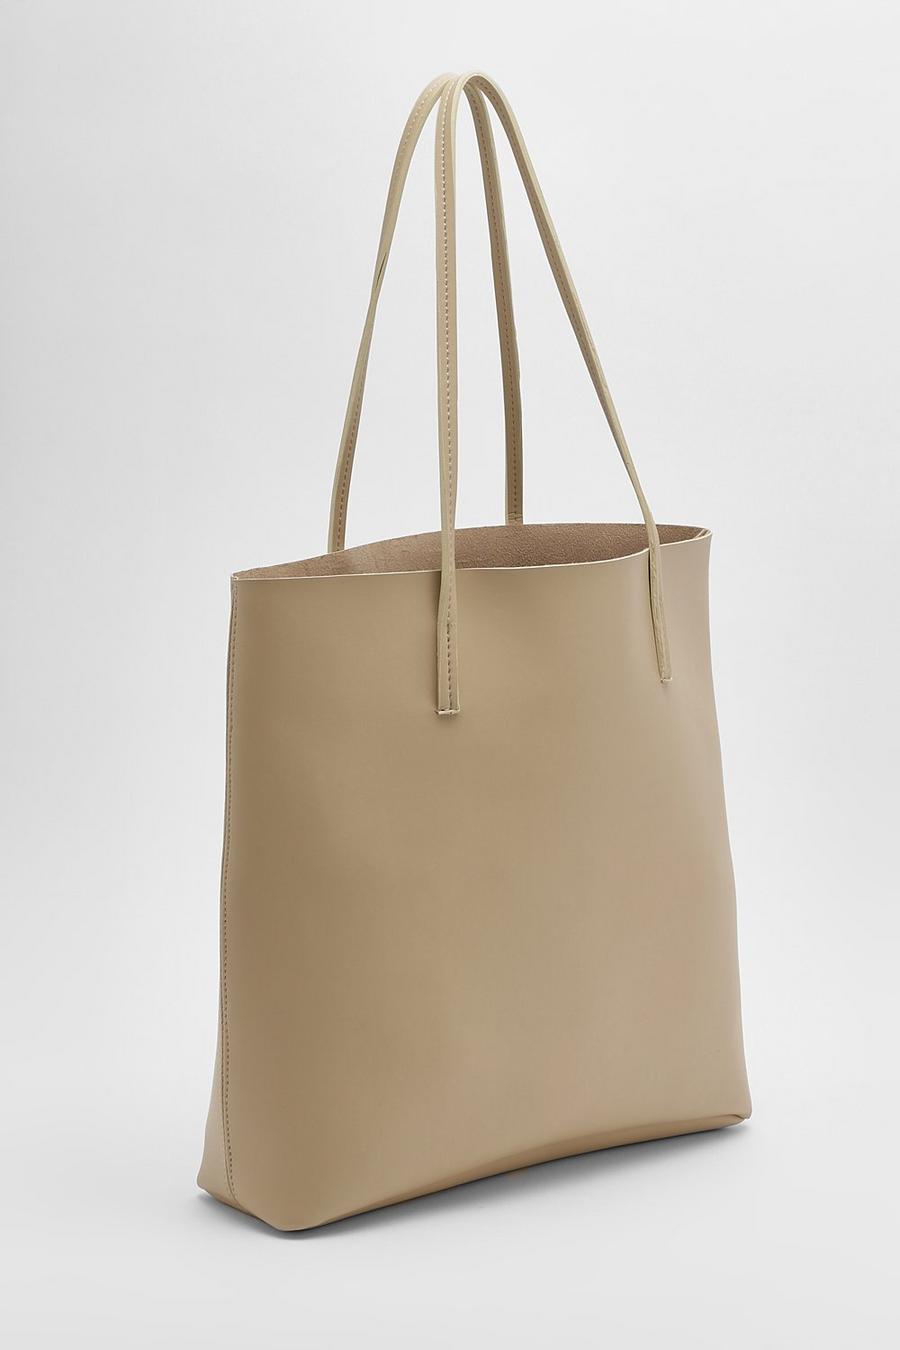 Cream white Basic Shopper Tote Bag